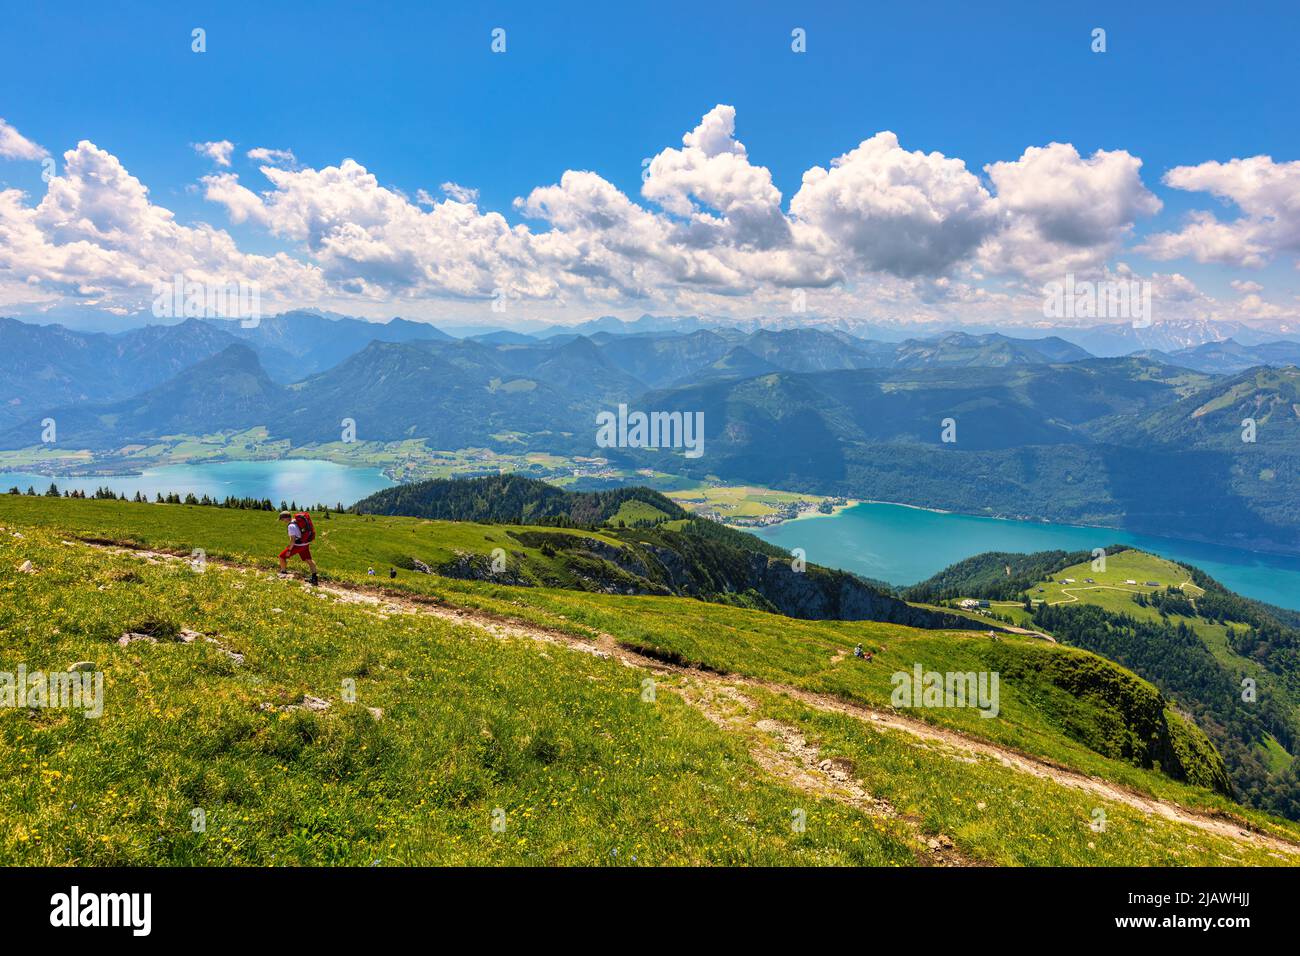 Schafberges aufgenommen, Mountain landscape in Salzkammergut, Upper Austria. View from Schafberg peak to Mondsee, Austria. Himmelspforte Schafberg in Stock Photo